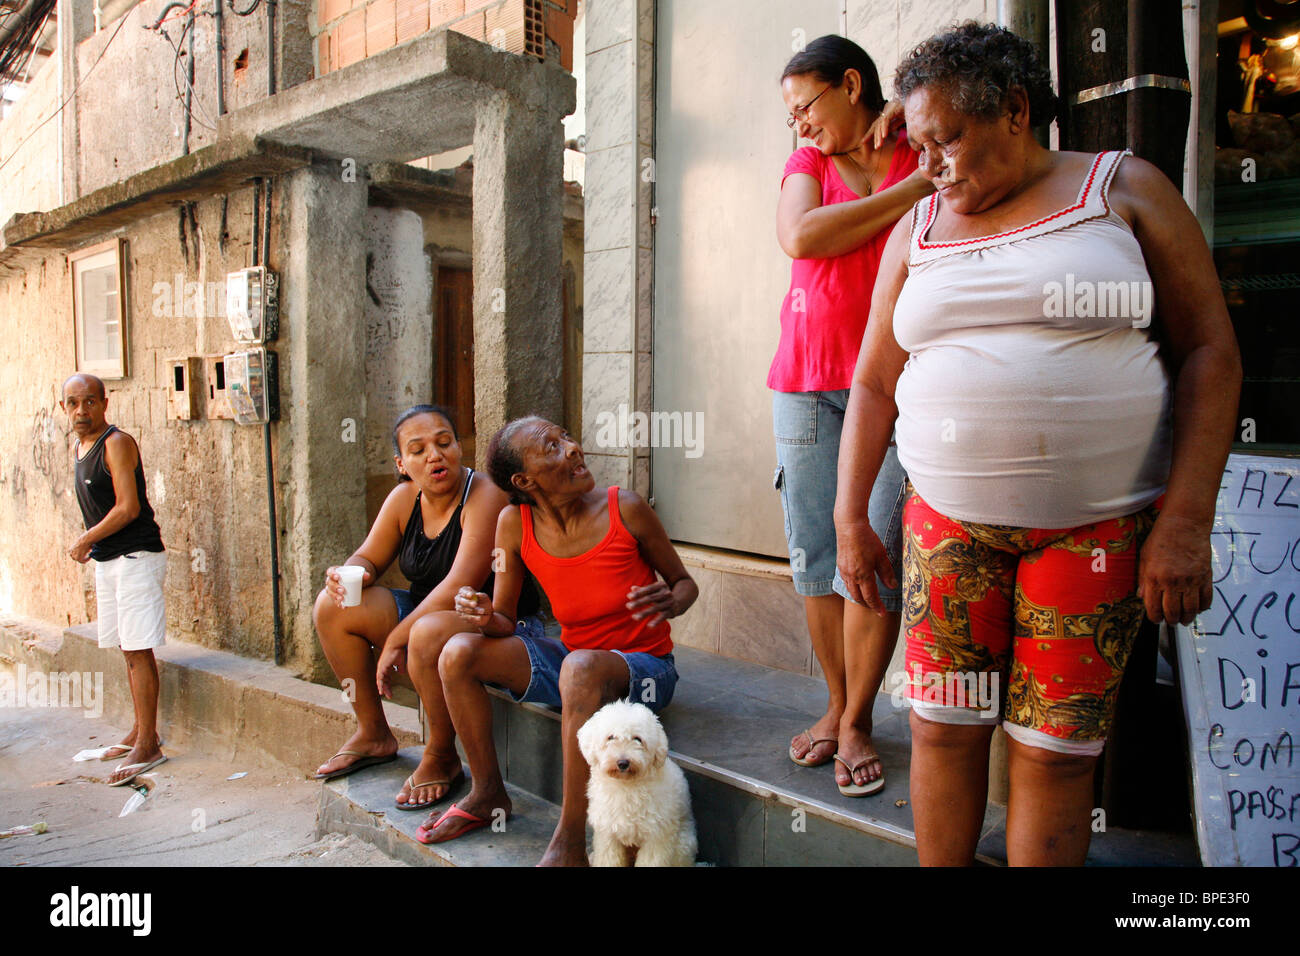 People at Rocinha favela, Rio de Janeiro, Brazil. Stock Photo